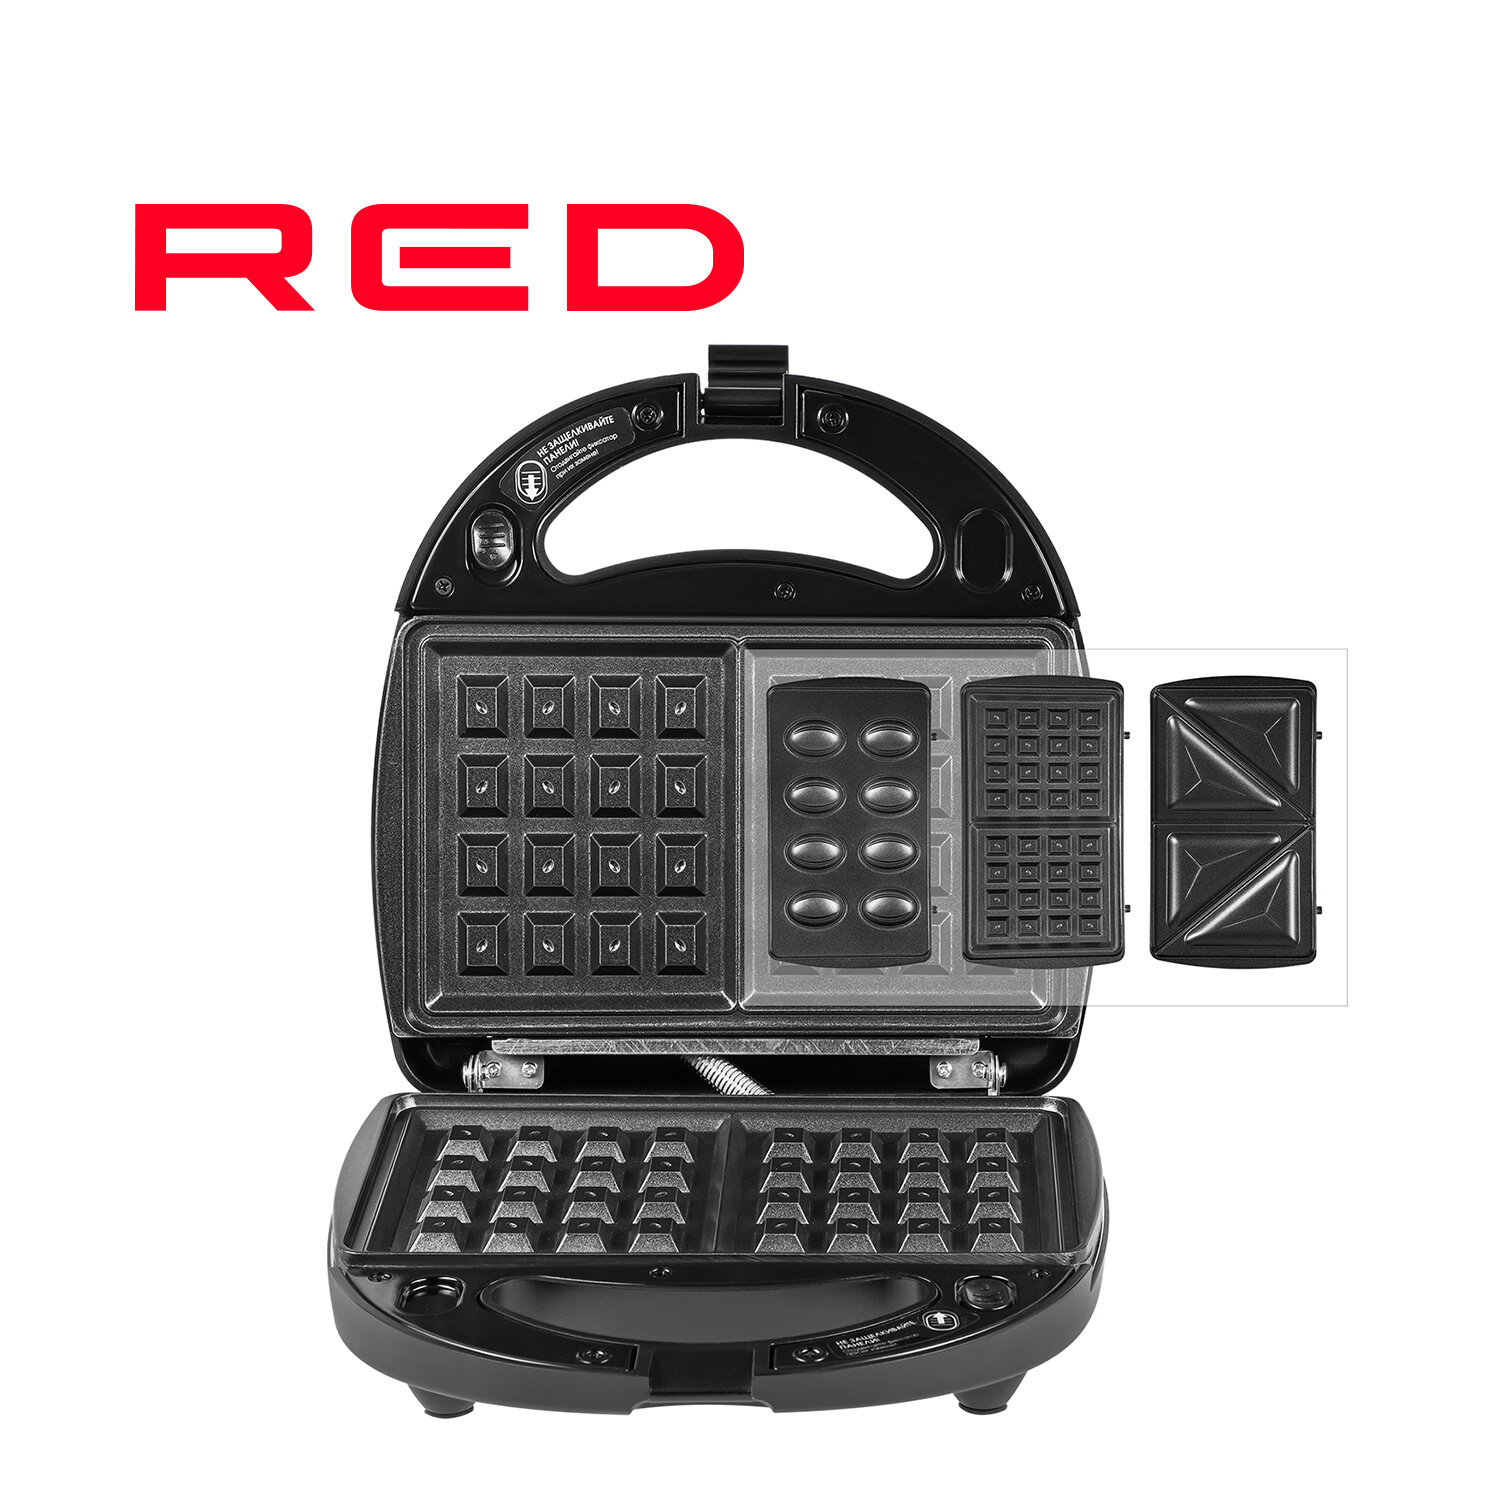 Мультипекарь RED solution RMB-M603, черный